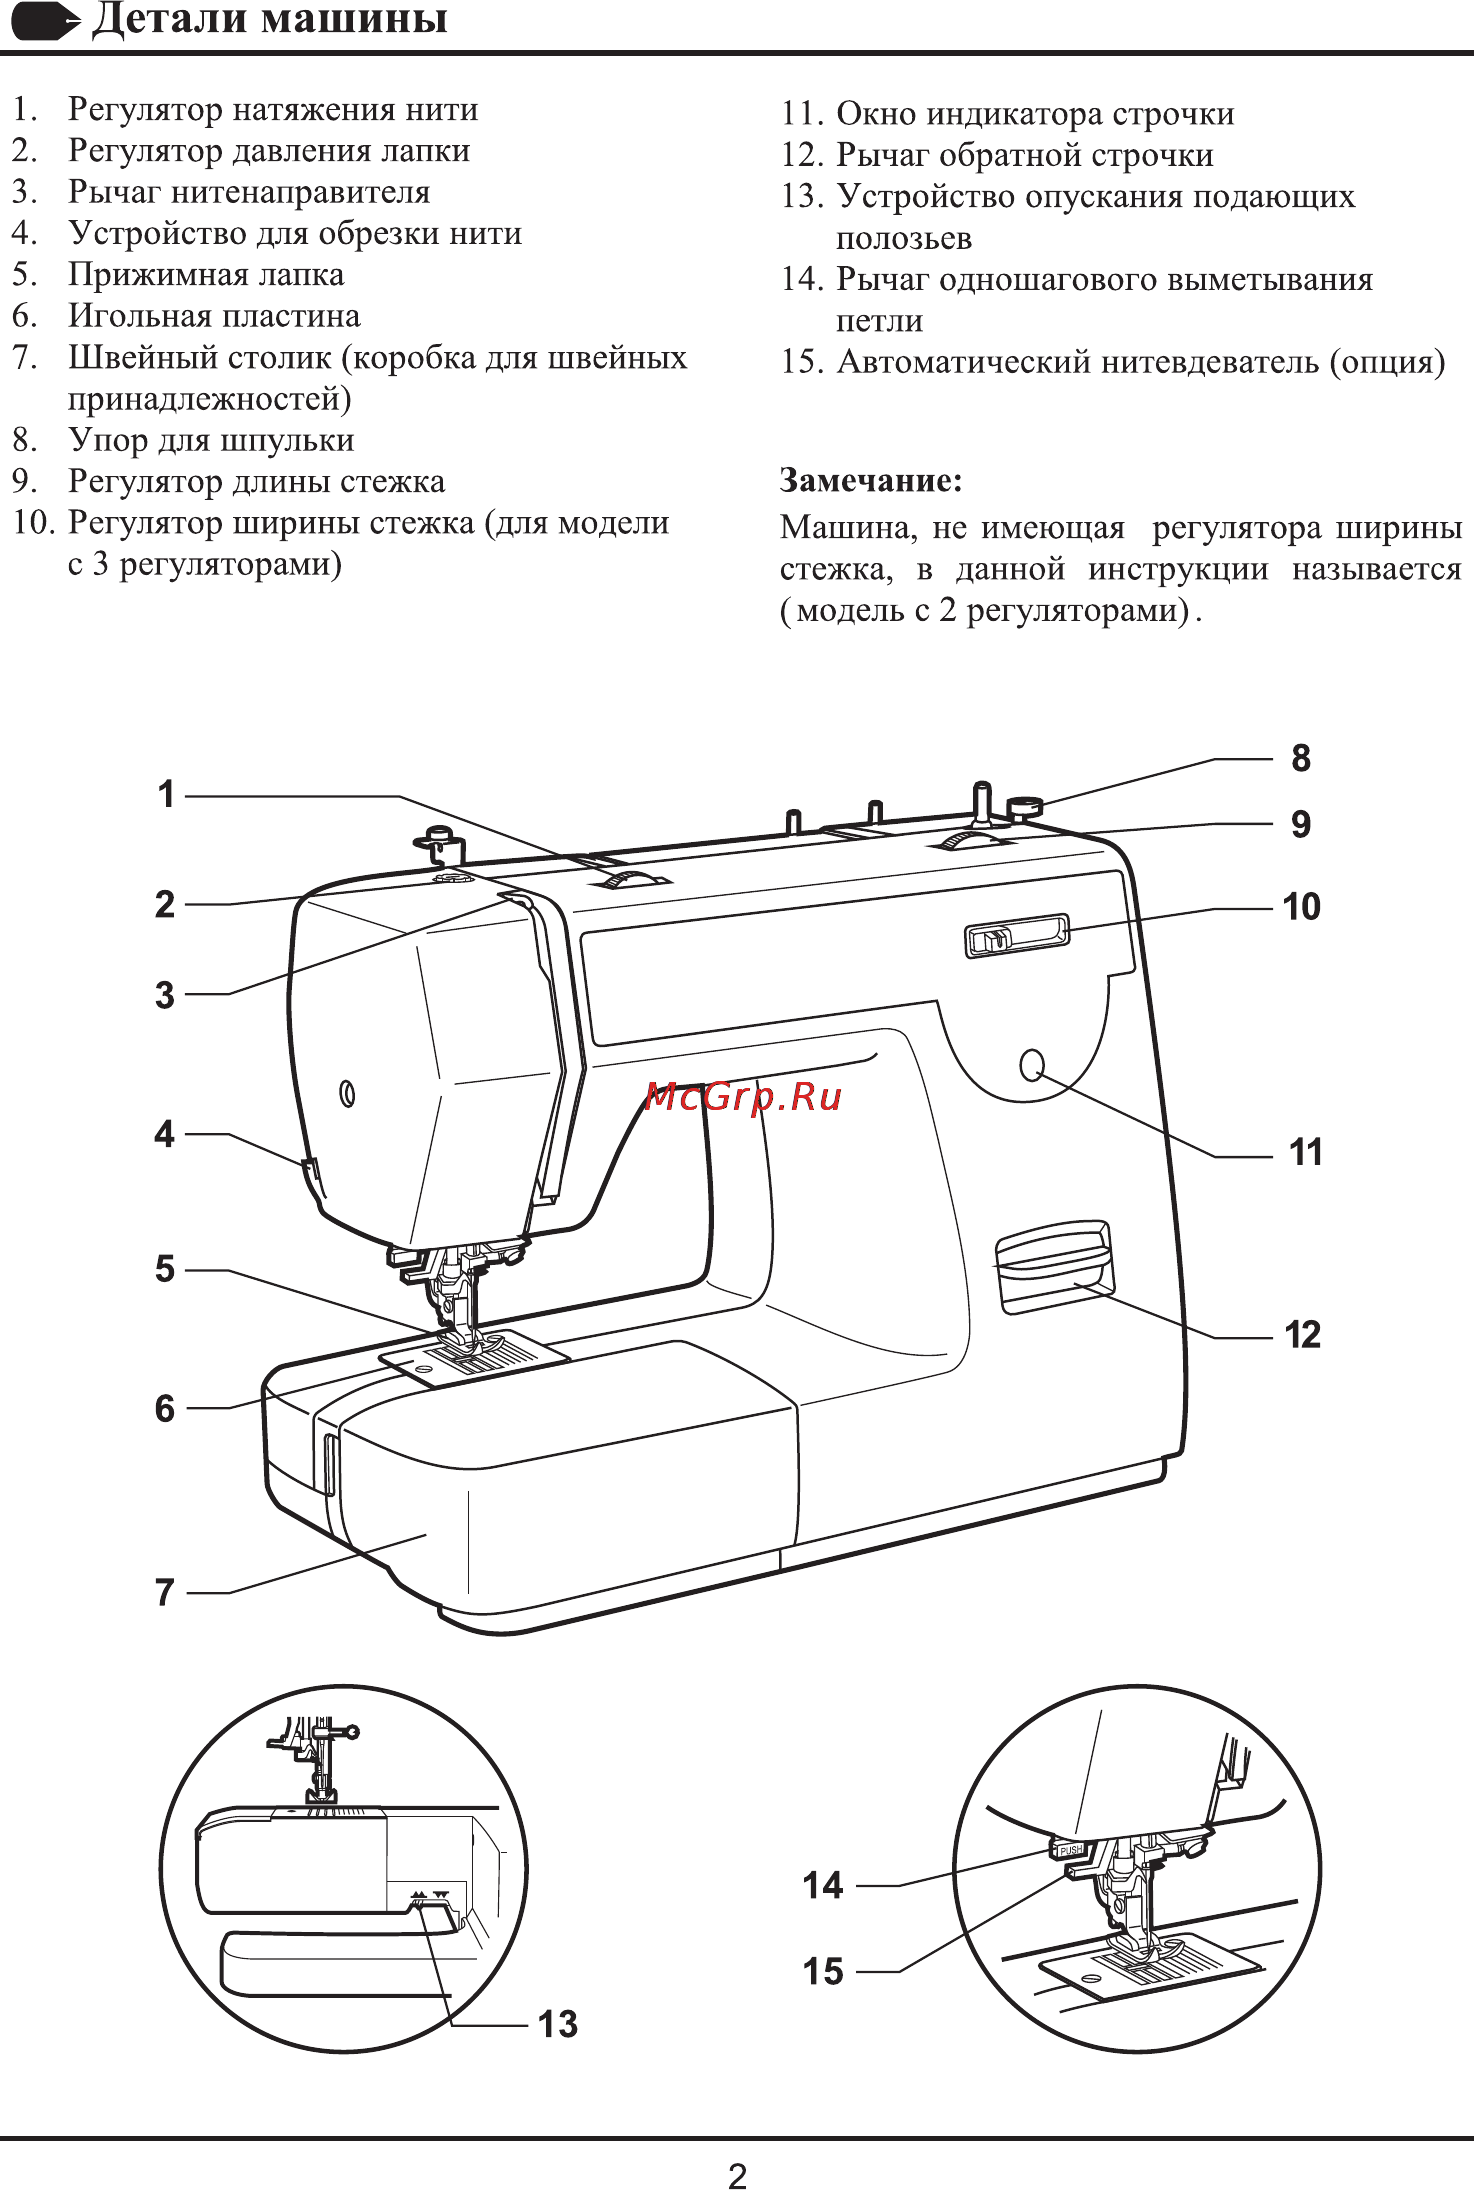 Как пользоваться швейной машинкой правильно: пошаговая инструкция